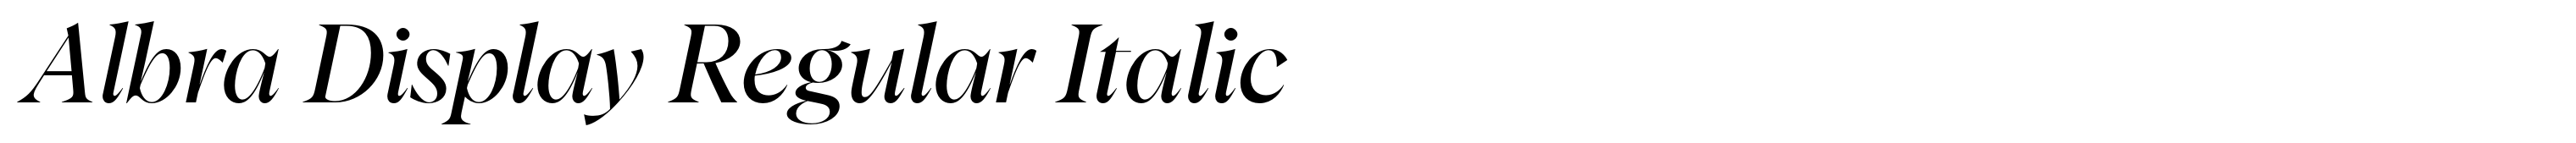 Albra Display Regular Italic